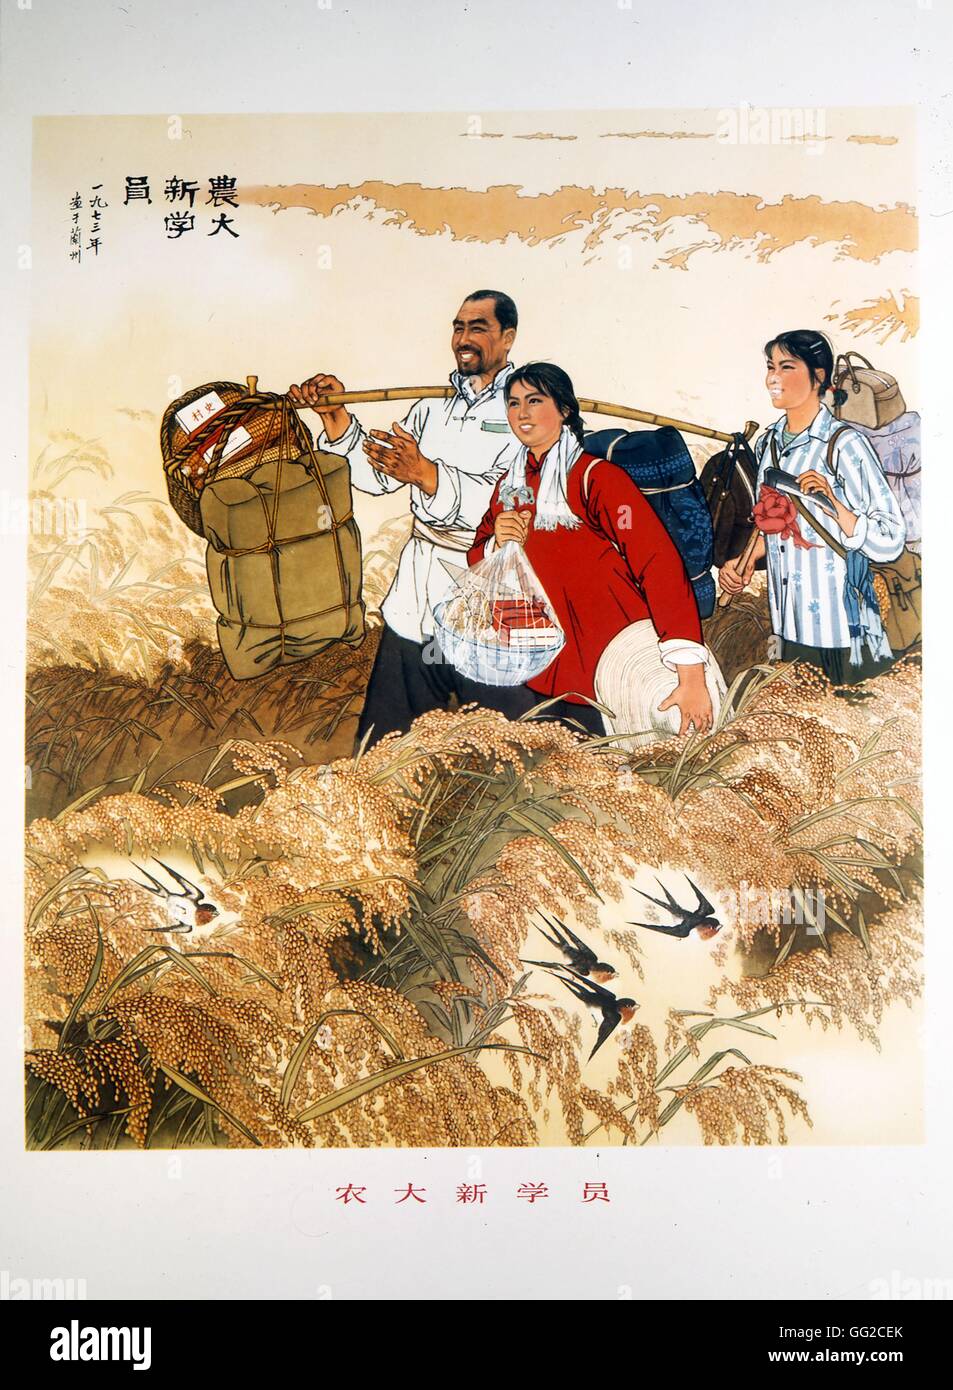 Style traditionnel chinois, laissant pour l'Institut d'Agronomie 20e siècle Chine Banque D'Images